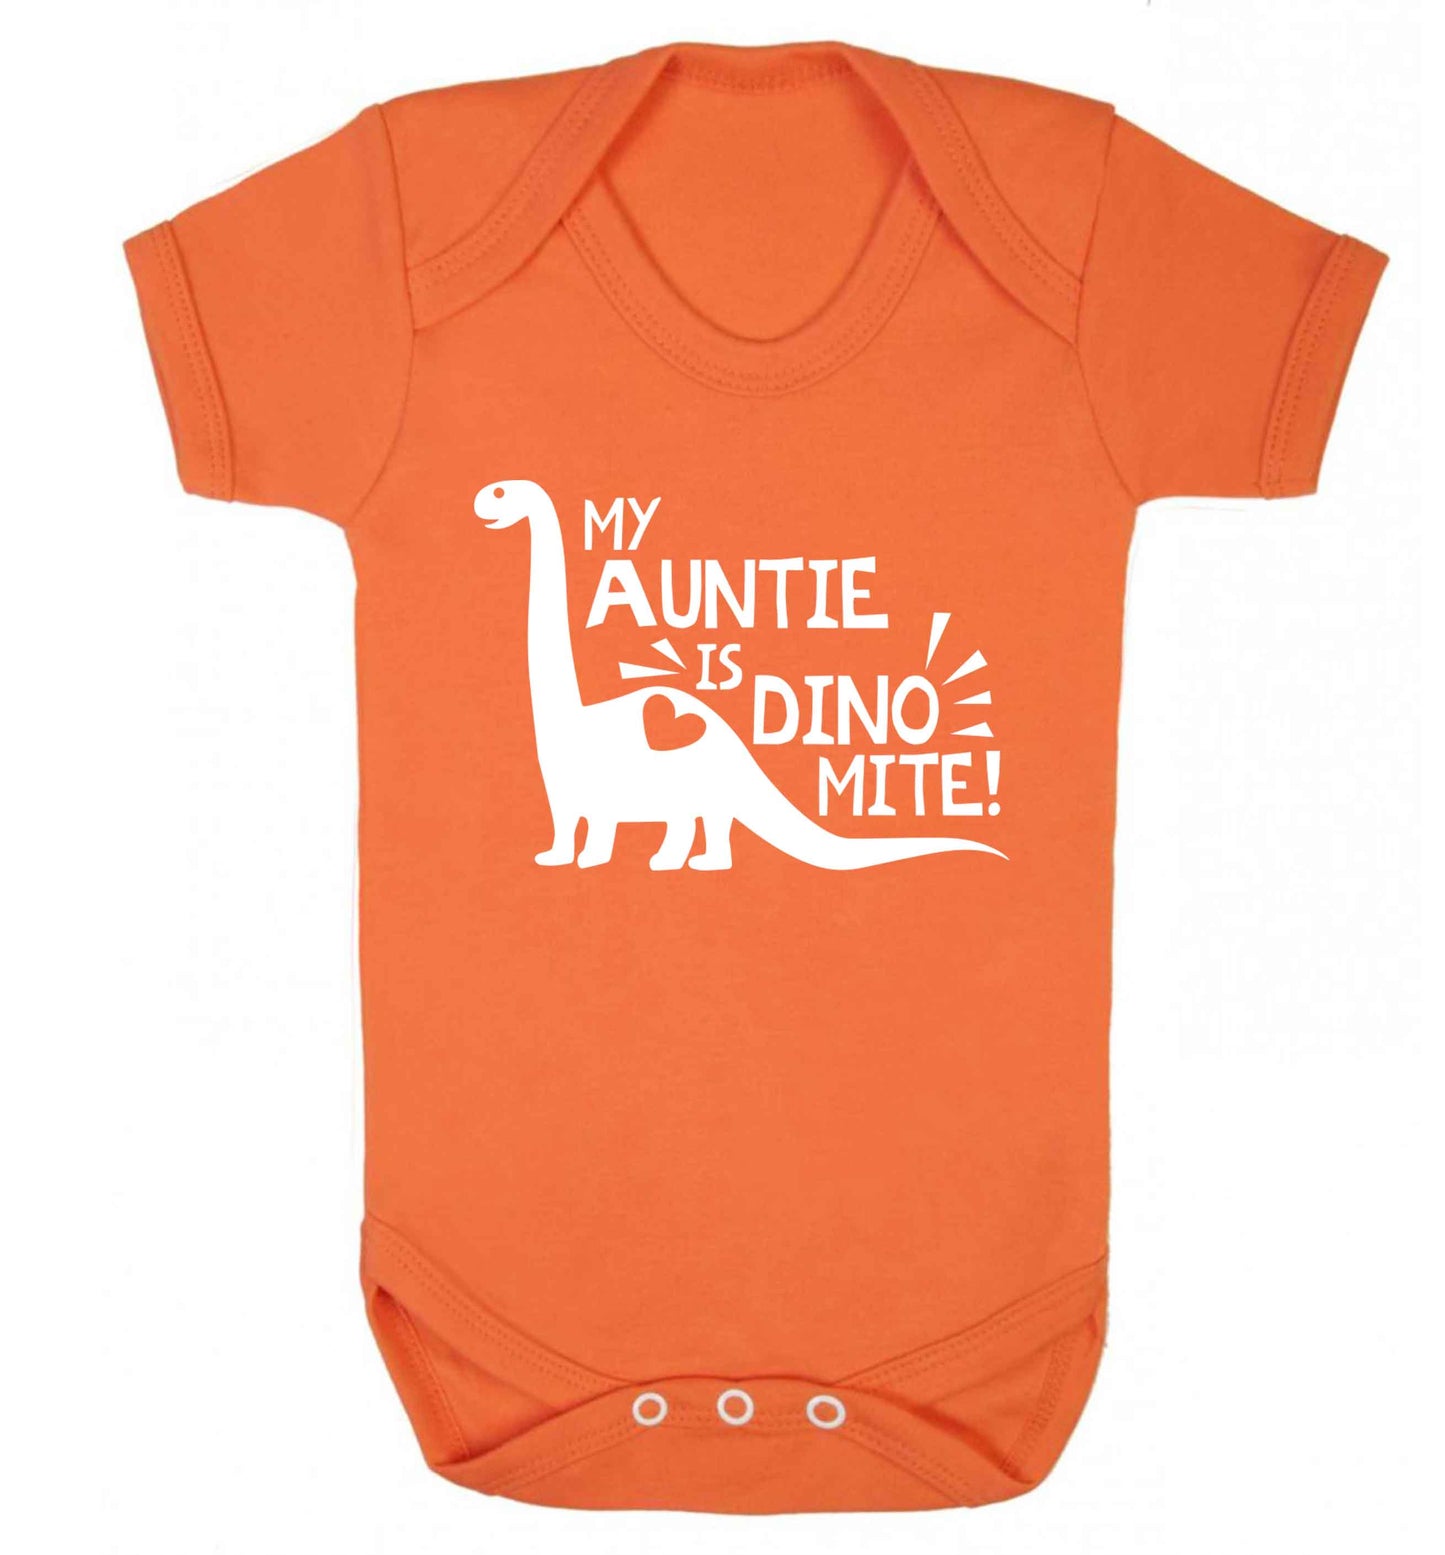 My auntie is dinomite! Baby Vest orange 18-24 months